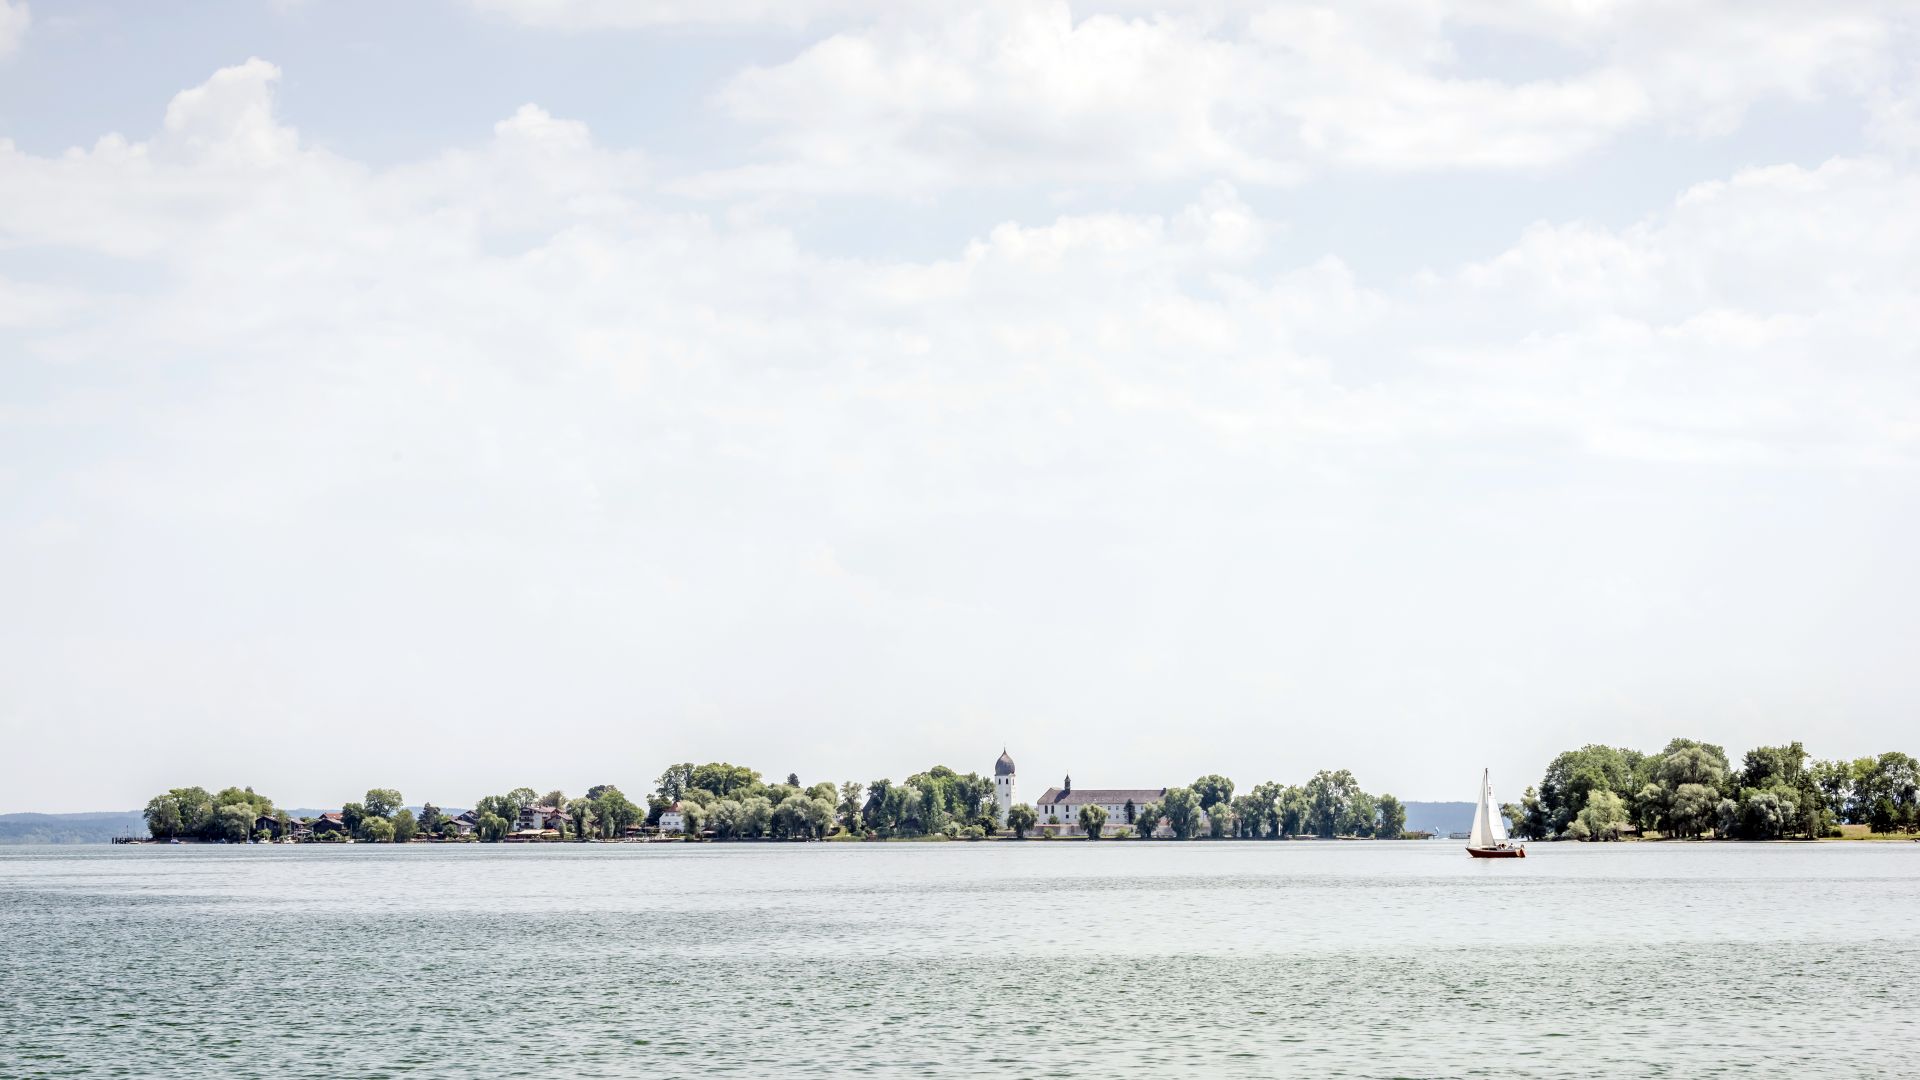 Chiemsee: Herreninsel im Chiemsee mit Segelschiff